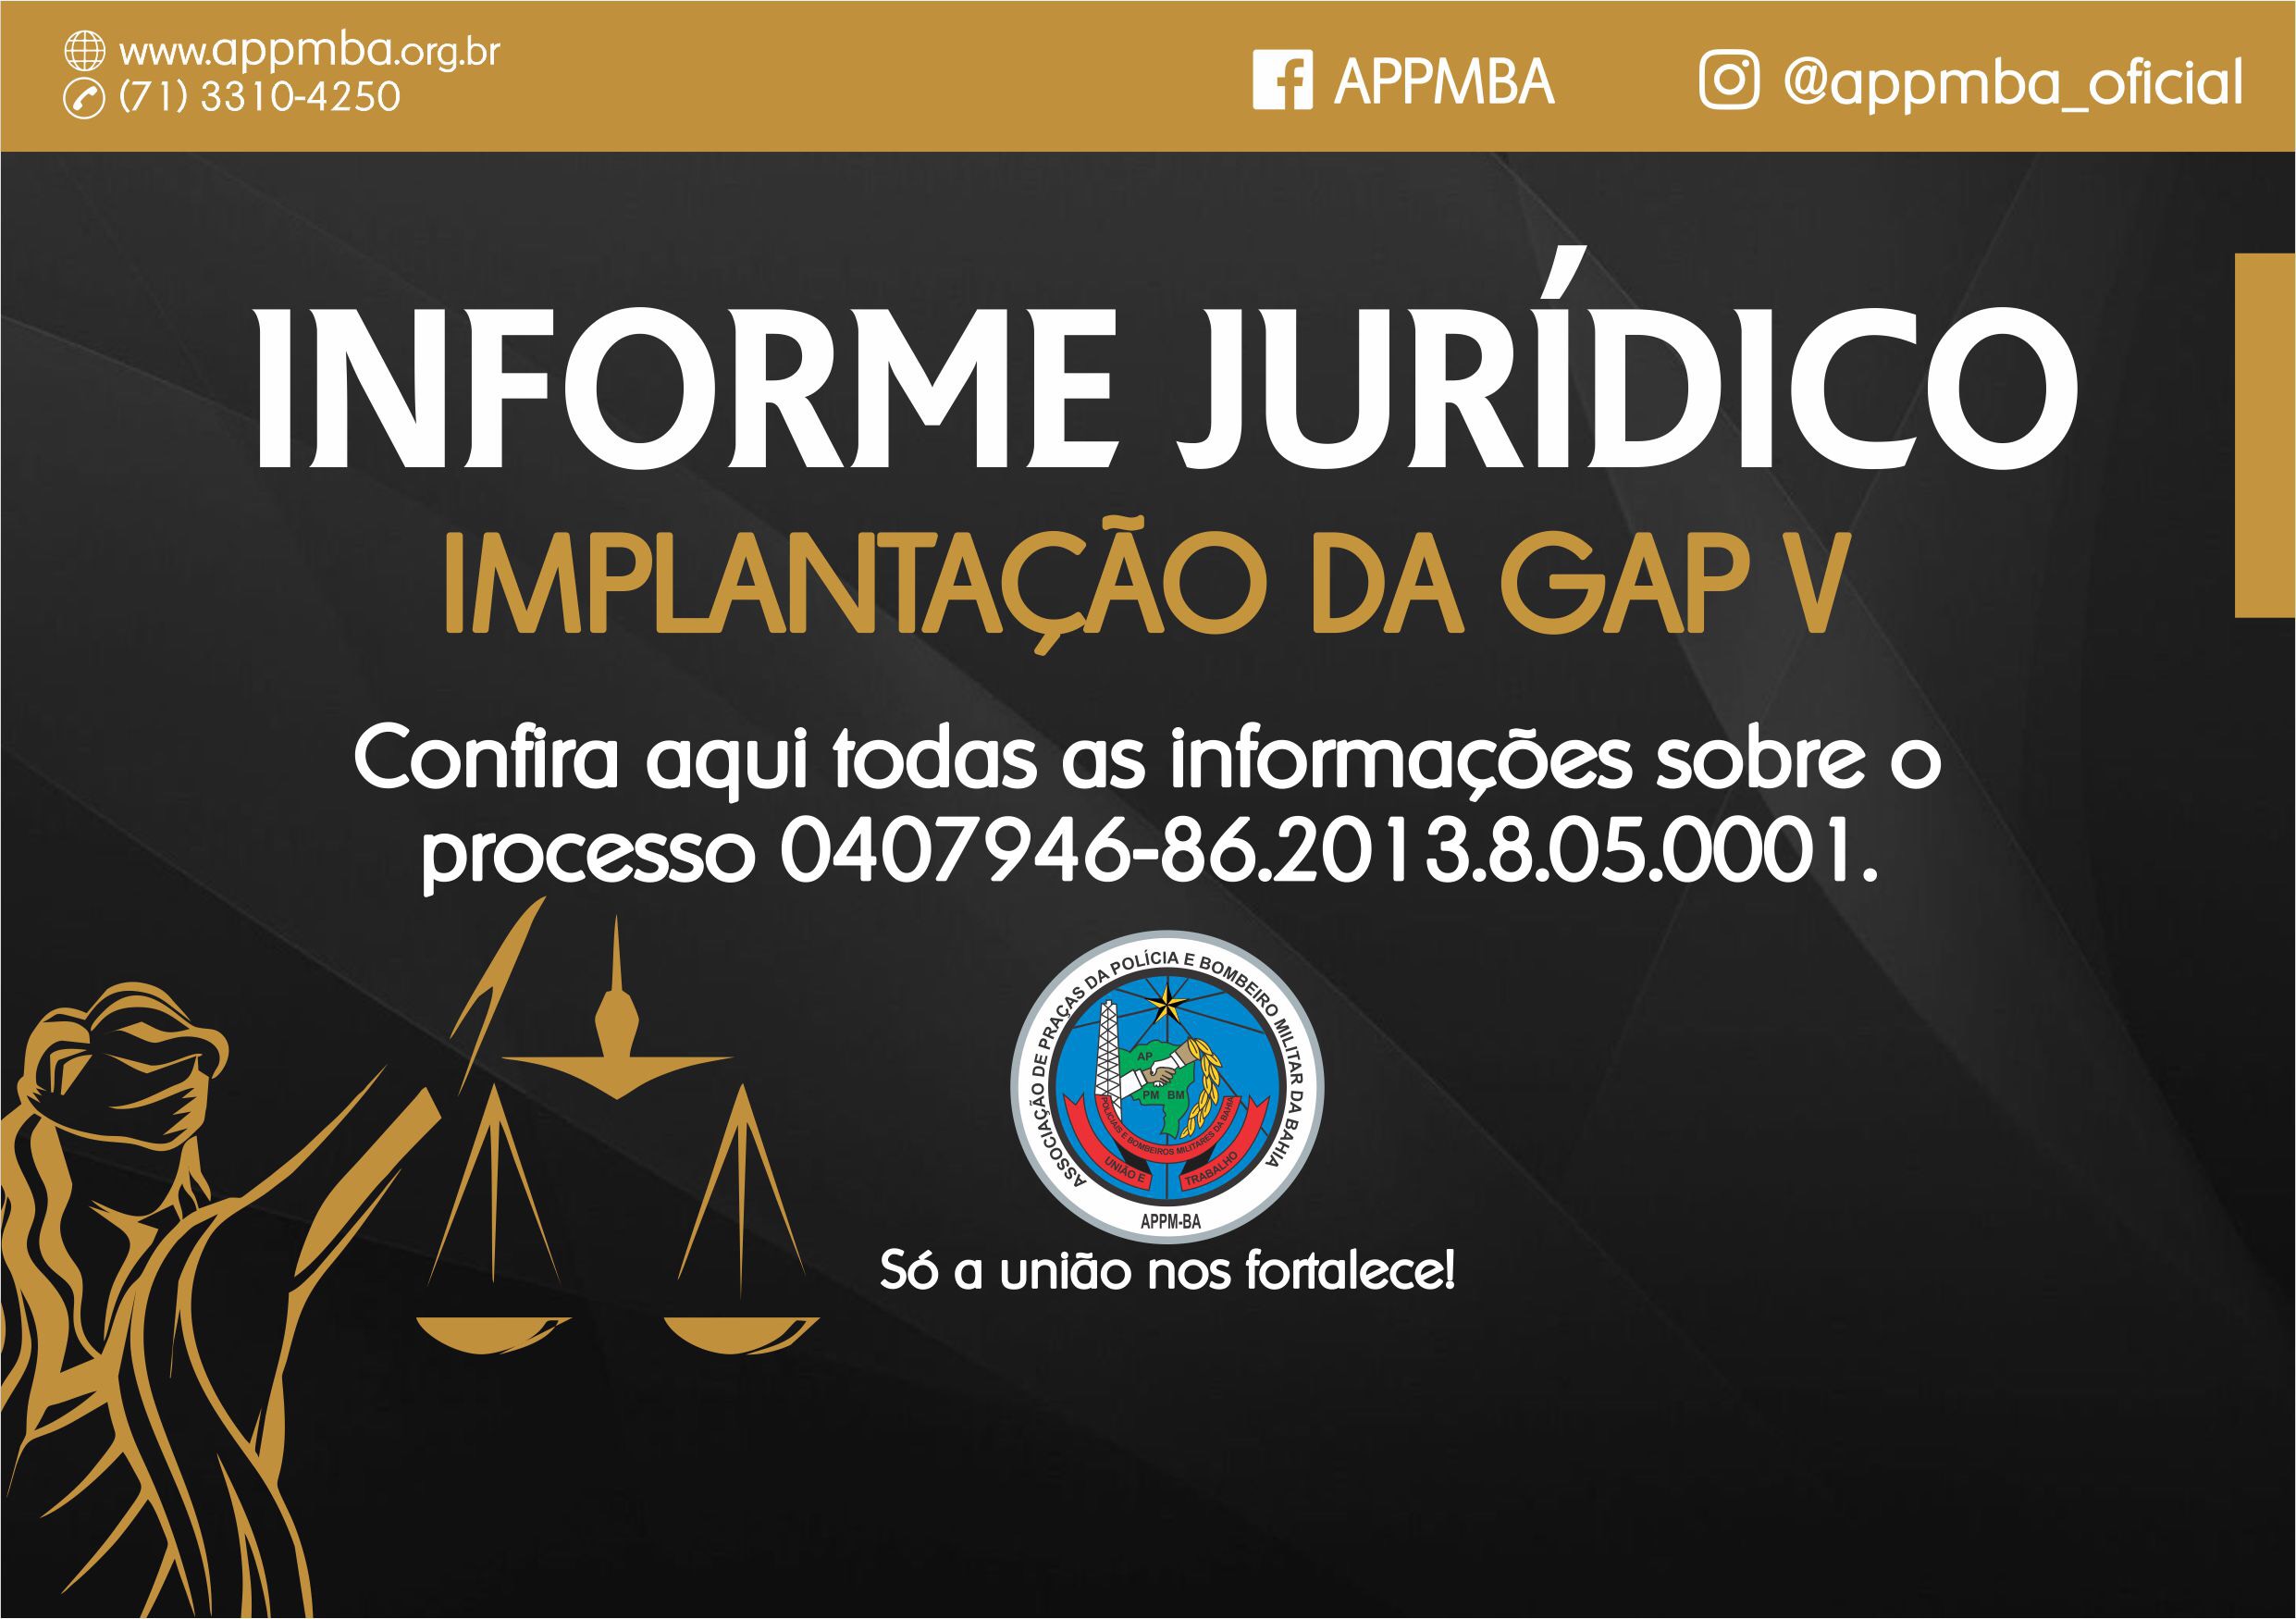 Informe Jurídico - Implantação da GAP V (processo 0407946-86.2013.8.05.0001)